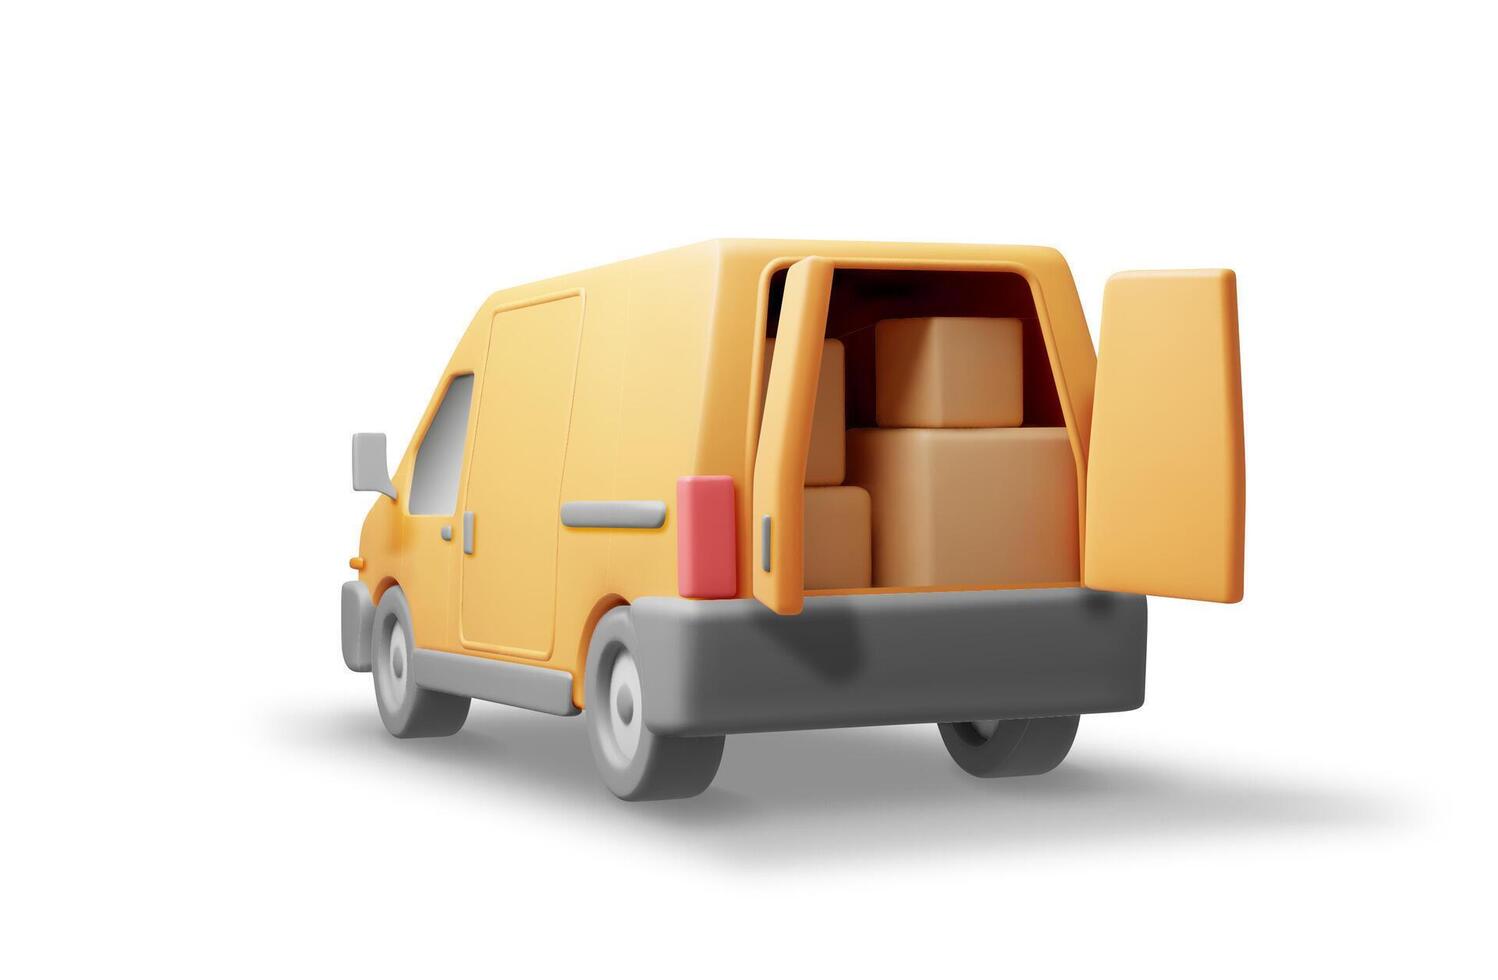 3d Lieferung van voll von Karton Kisten isoliert. machen ausdrücken liefern Dienstleistungen kommerziell LKW. Konzept von schnell und kostenlos Lieferung durch Wagen. Ladung und Logistik. realistisch Vektor Illustration